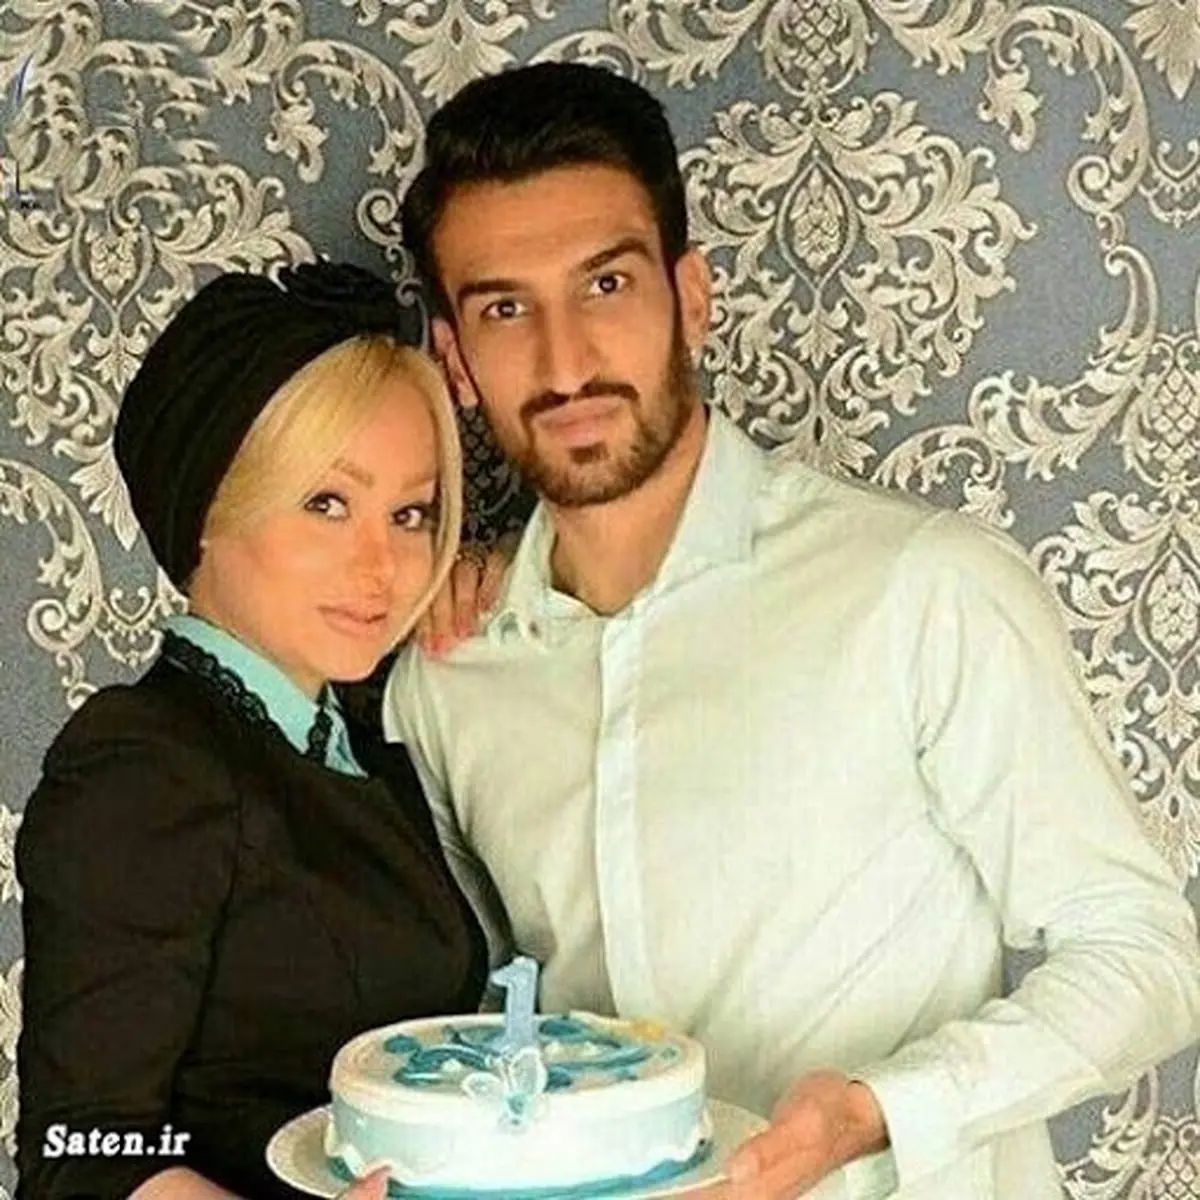 ماجرای آشنایی و ازدواج حسین ماهینی و همسرش + تصاویر جنجالی